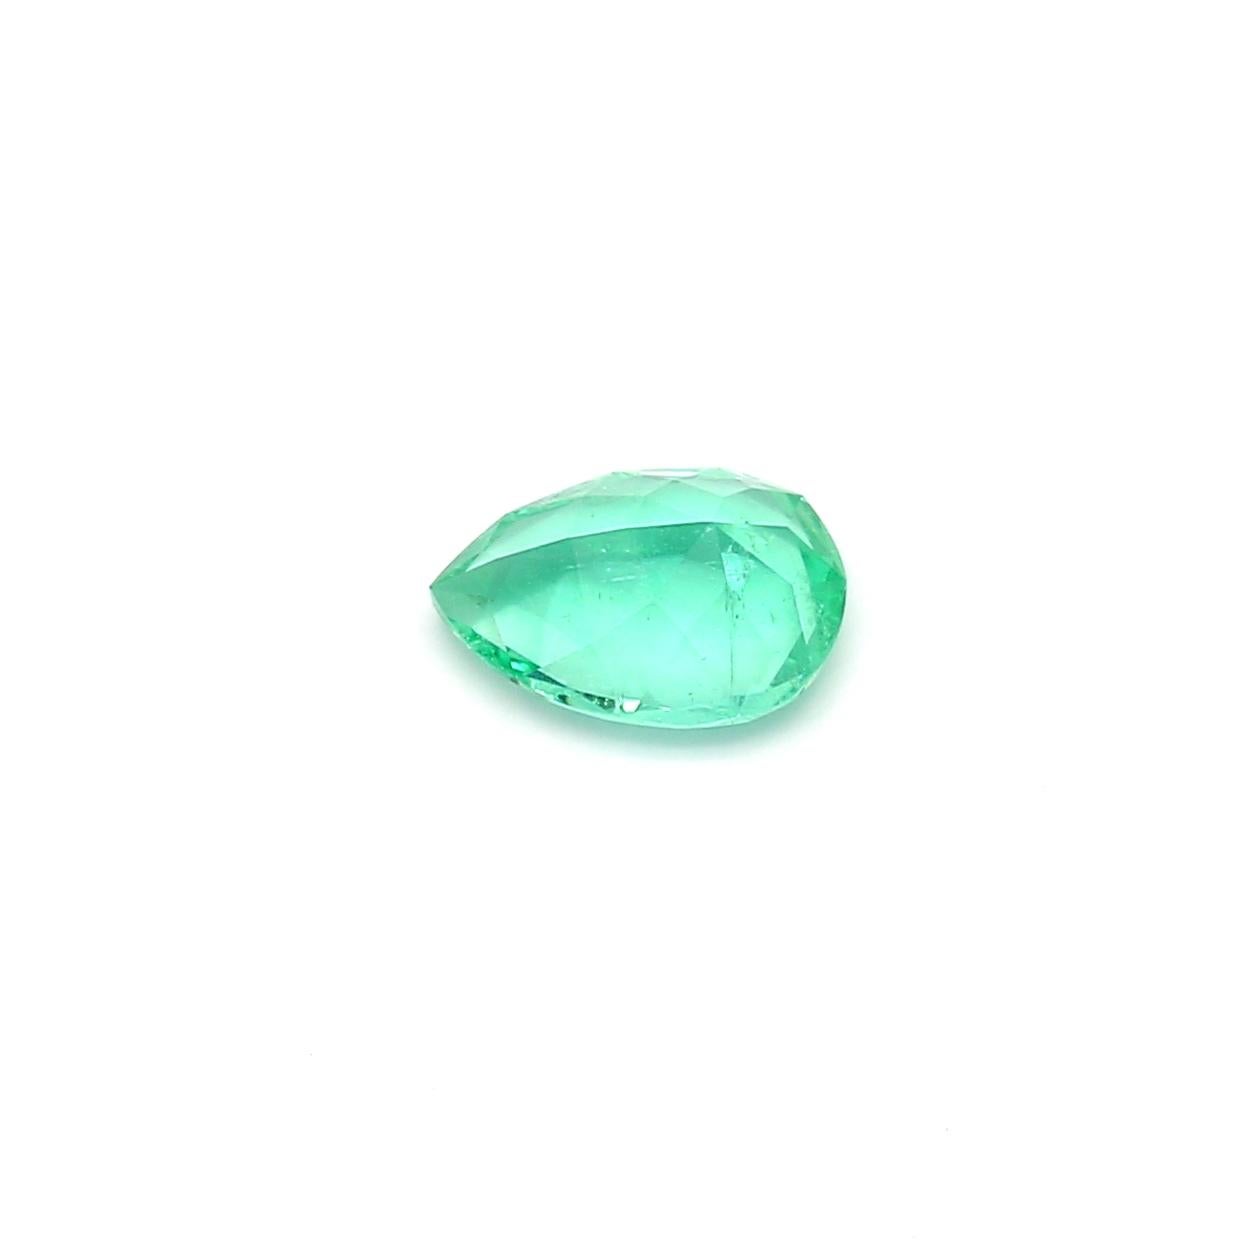 L'émeraude est une pierre précieuse d'un vert très vif. Il est très apprécié dans le monde entier et a longtemps été associé à la chance, à la prospérité et à une longue vie. Les émeraudes, avec leur forme allongée, sont un bon choix pour une bague